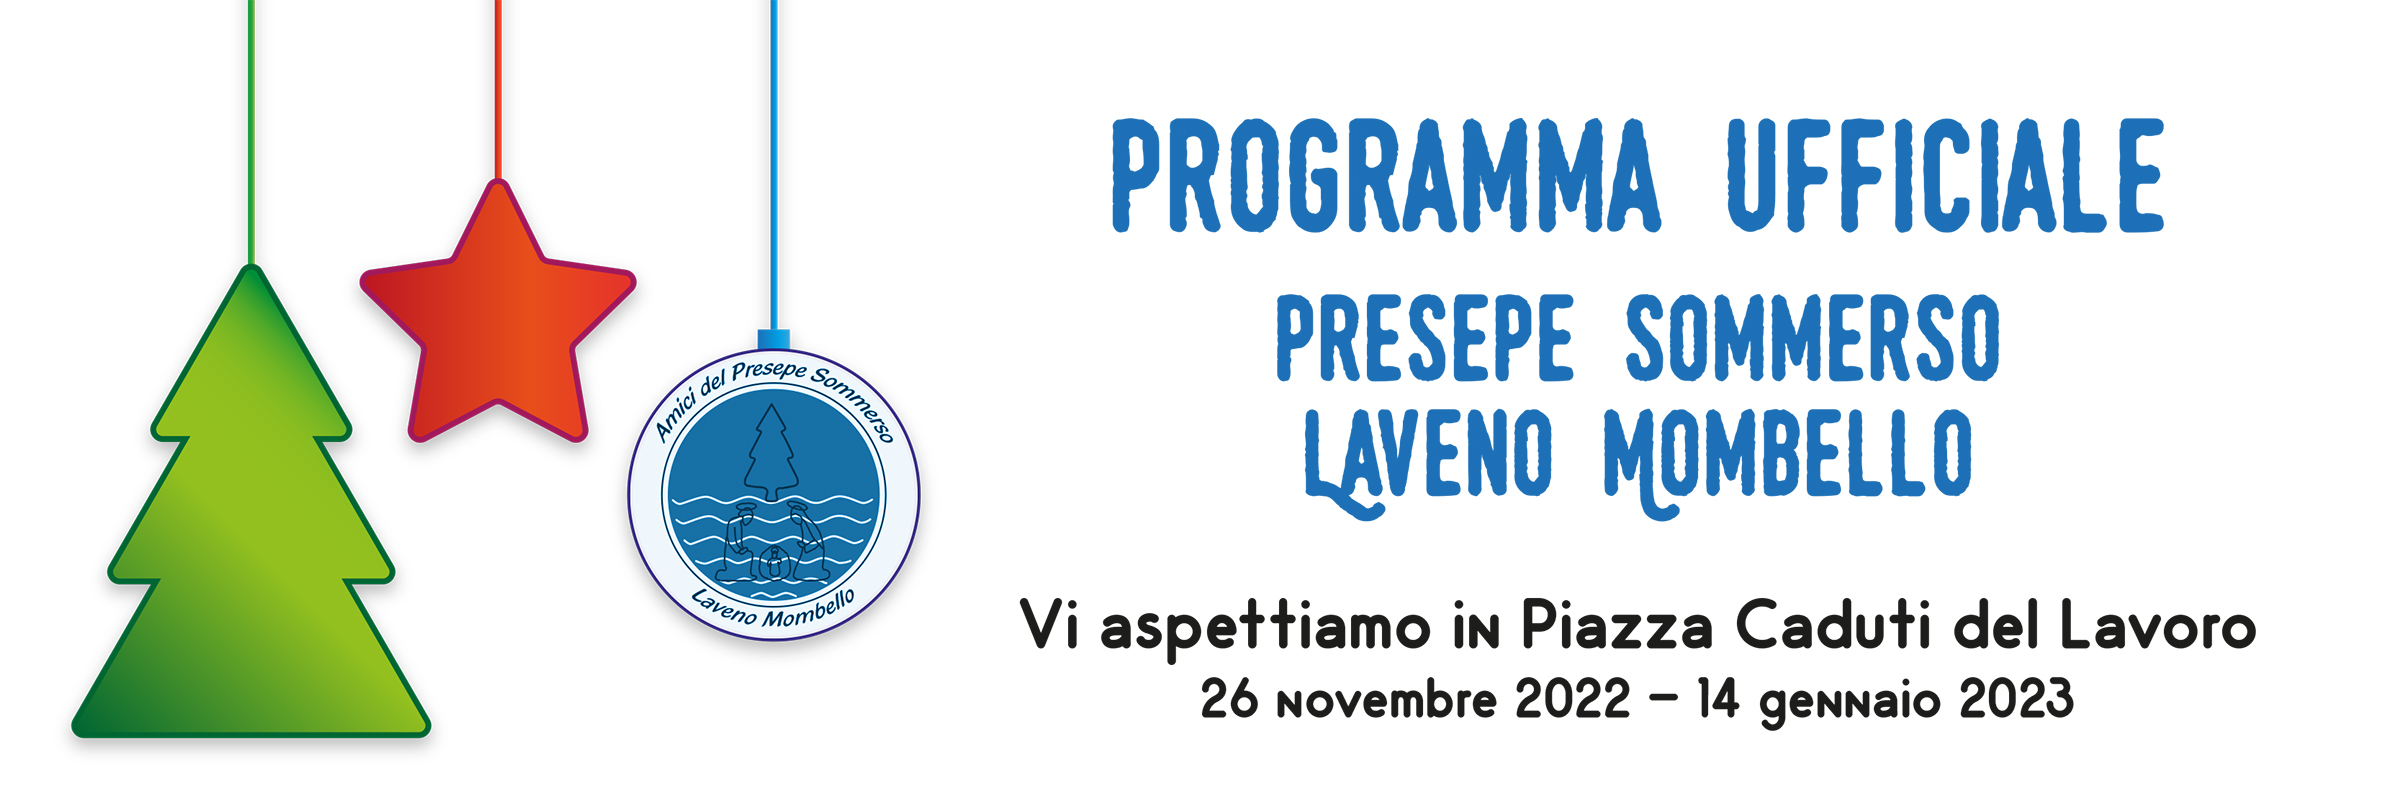 Il programma ufficiale della 43esima edizione del Presepe Sommerso lavenese